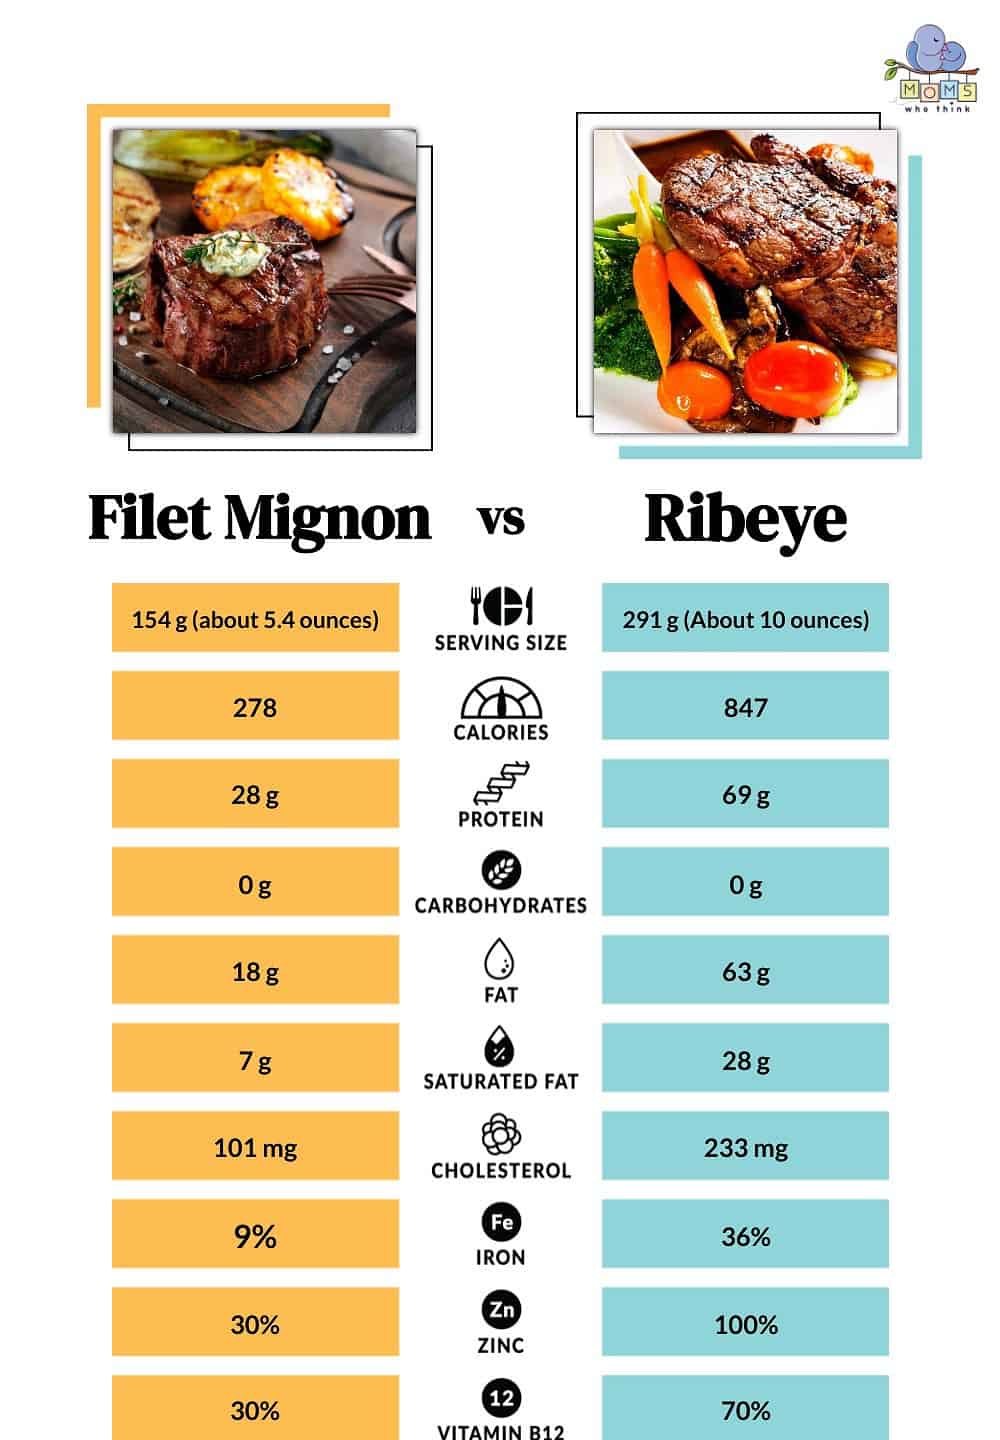 Filet Mignon vs Ribeye Nutrition